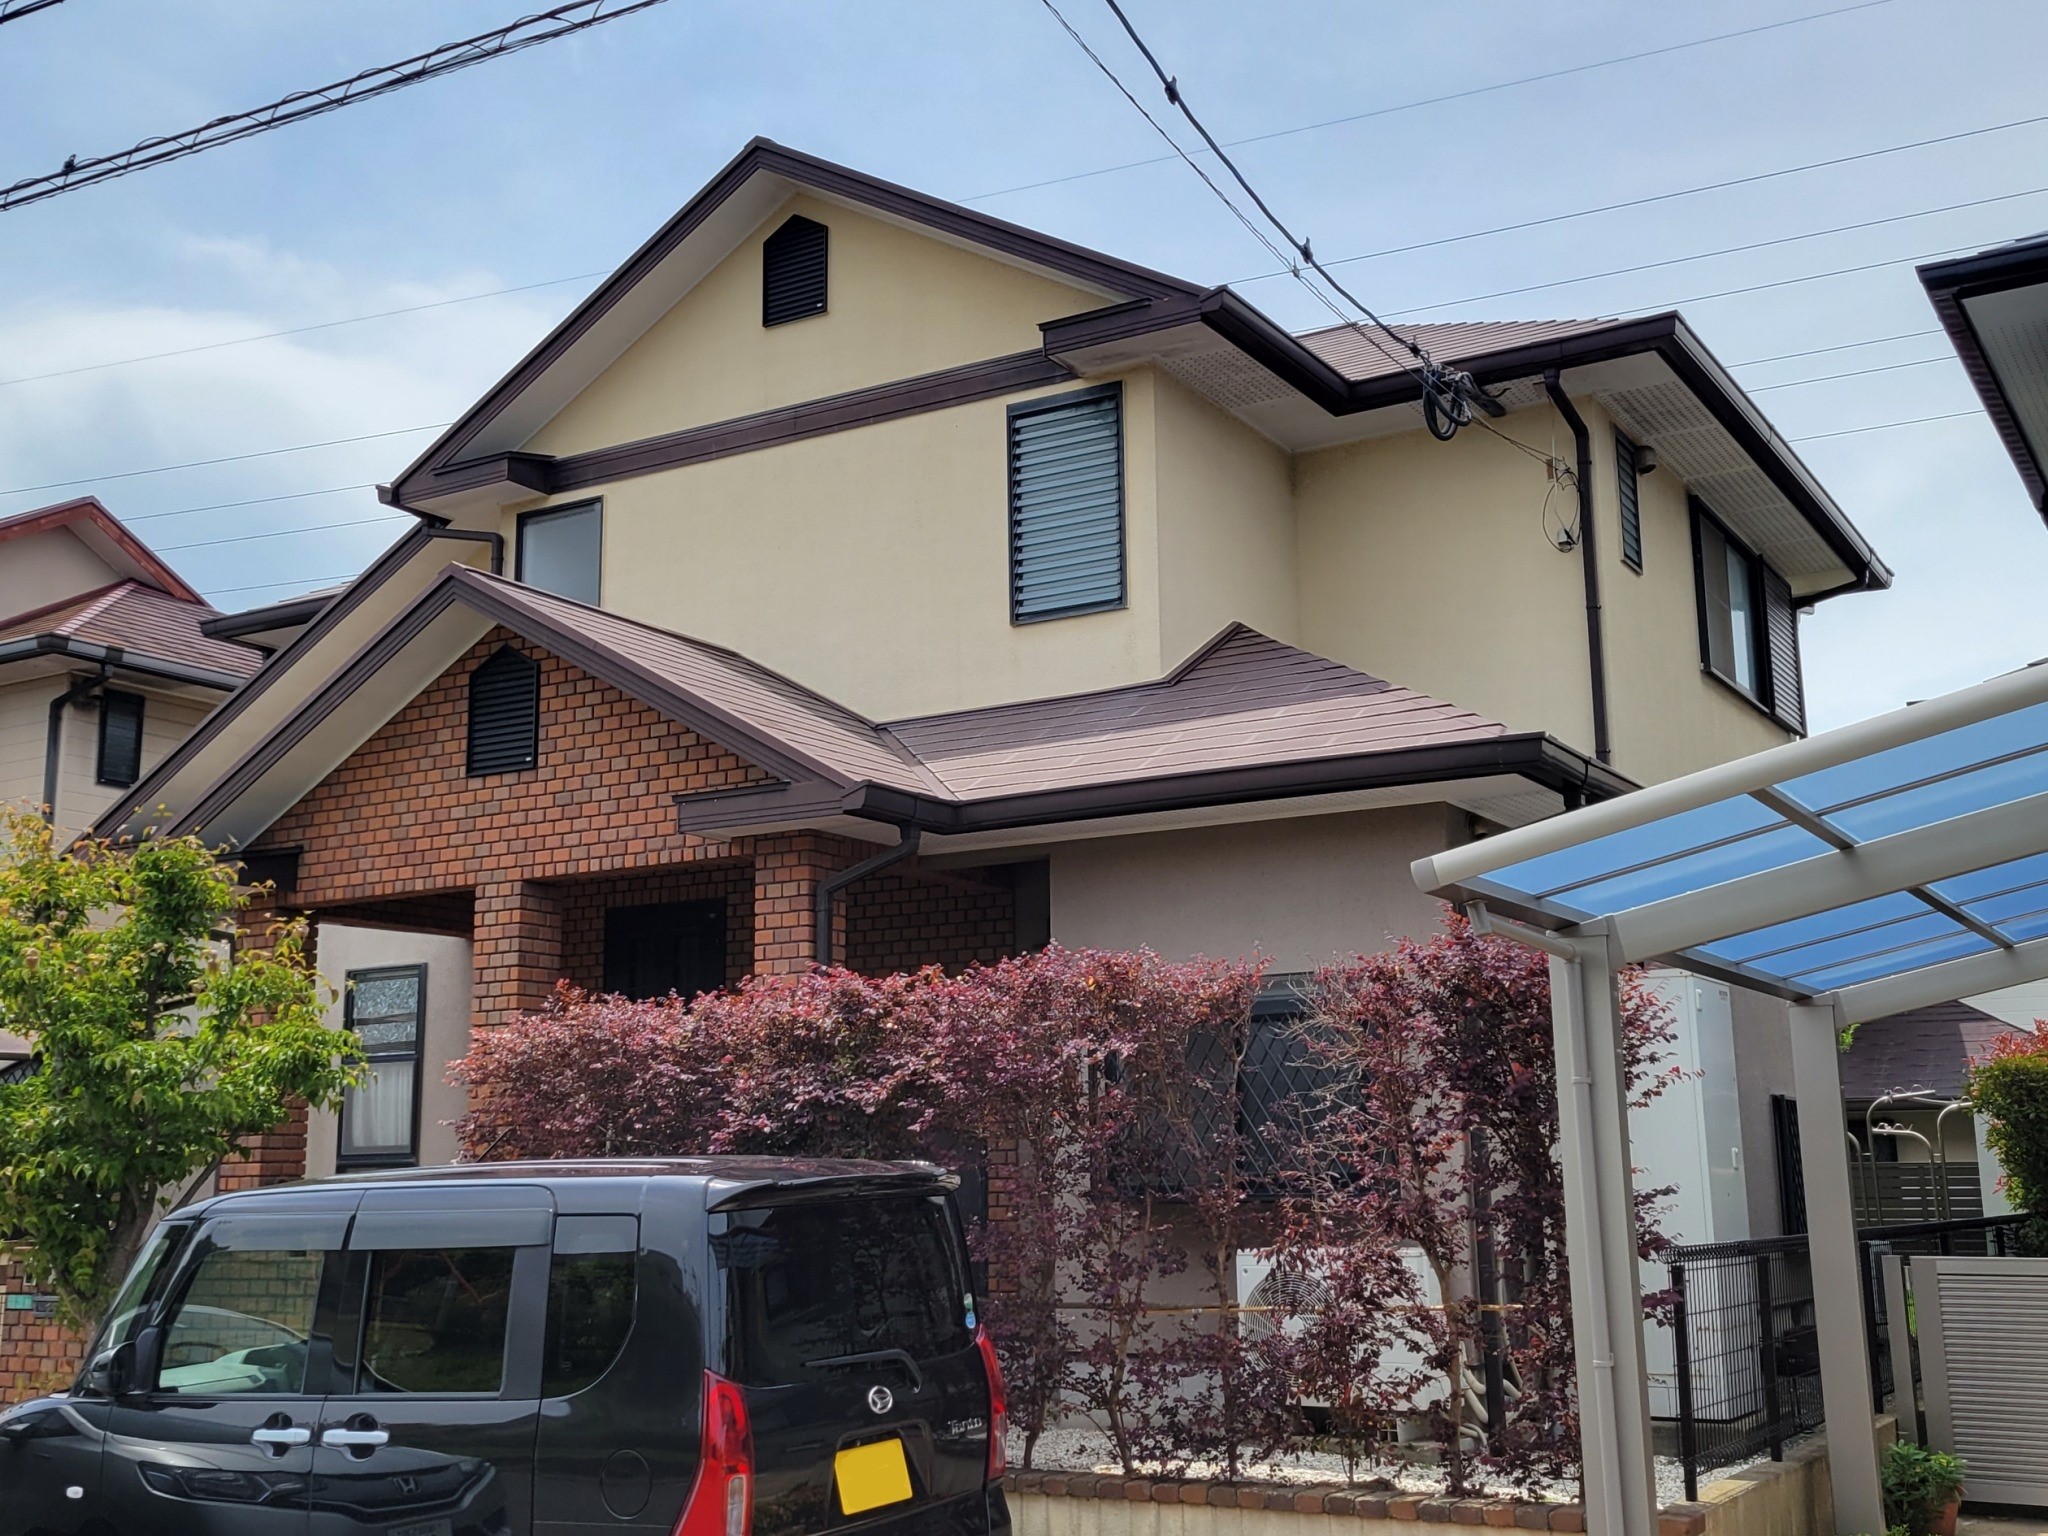 福岡県古賀市舞の里のT様邸で経年劣化により傷んだ外壁を塗り替えひび割れを起こしている幕板を補修しつつ屋根も含めた全体を高耐久塗料で仕上げました。10/11完成です。【HPより】